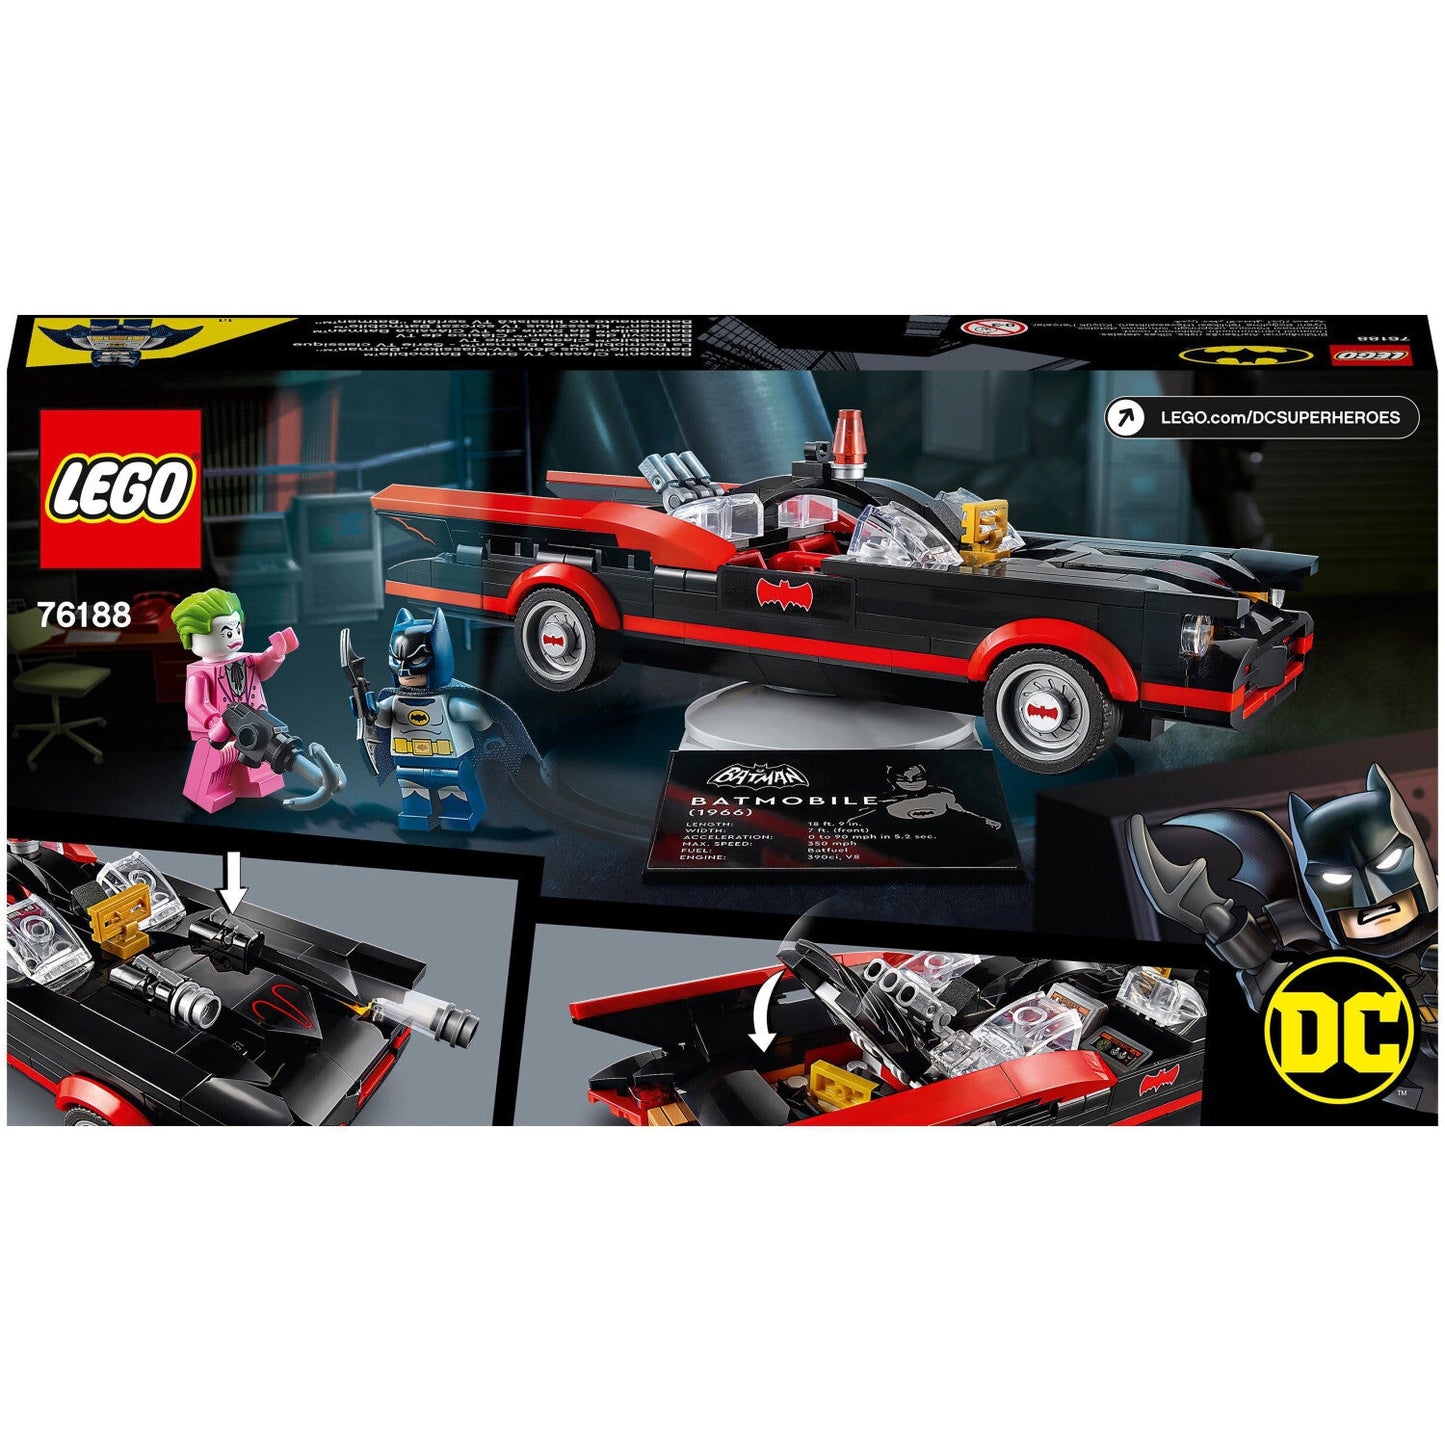 LEGO 76188 DC Super Heroes Batman Batmobile